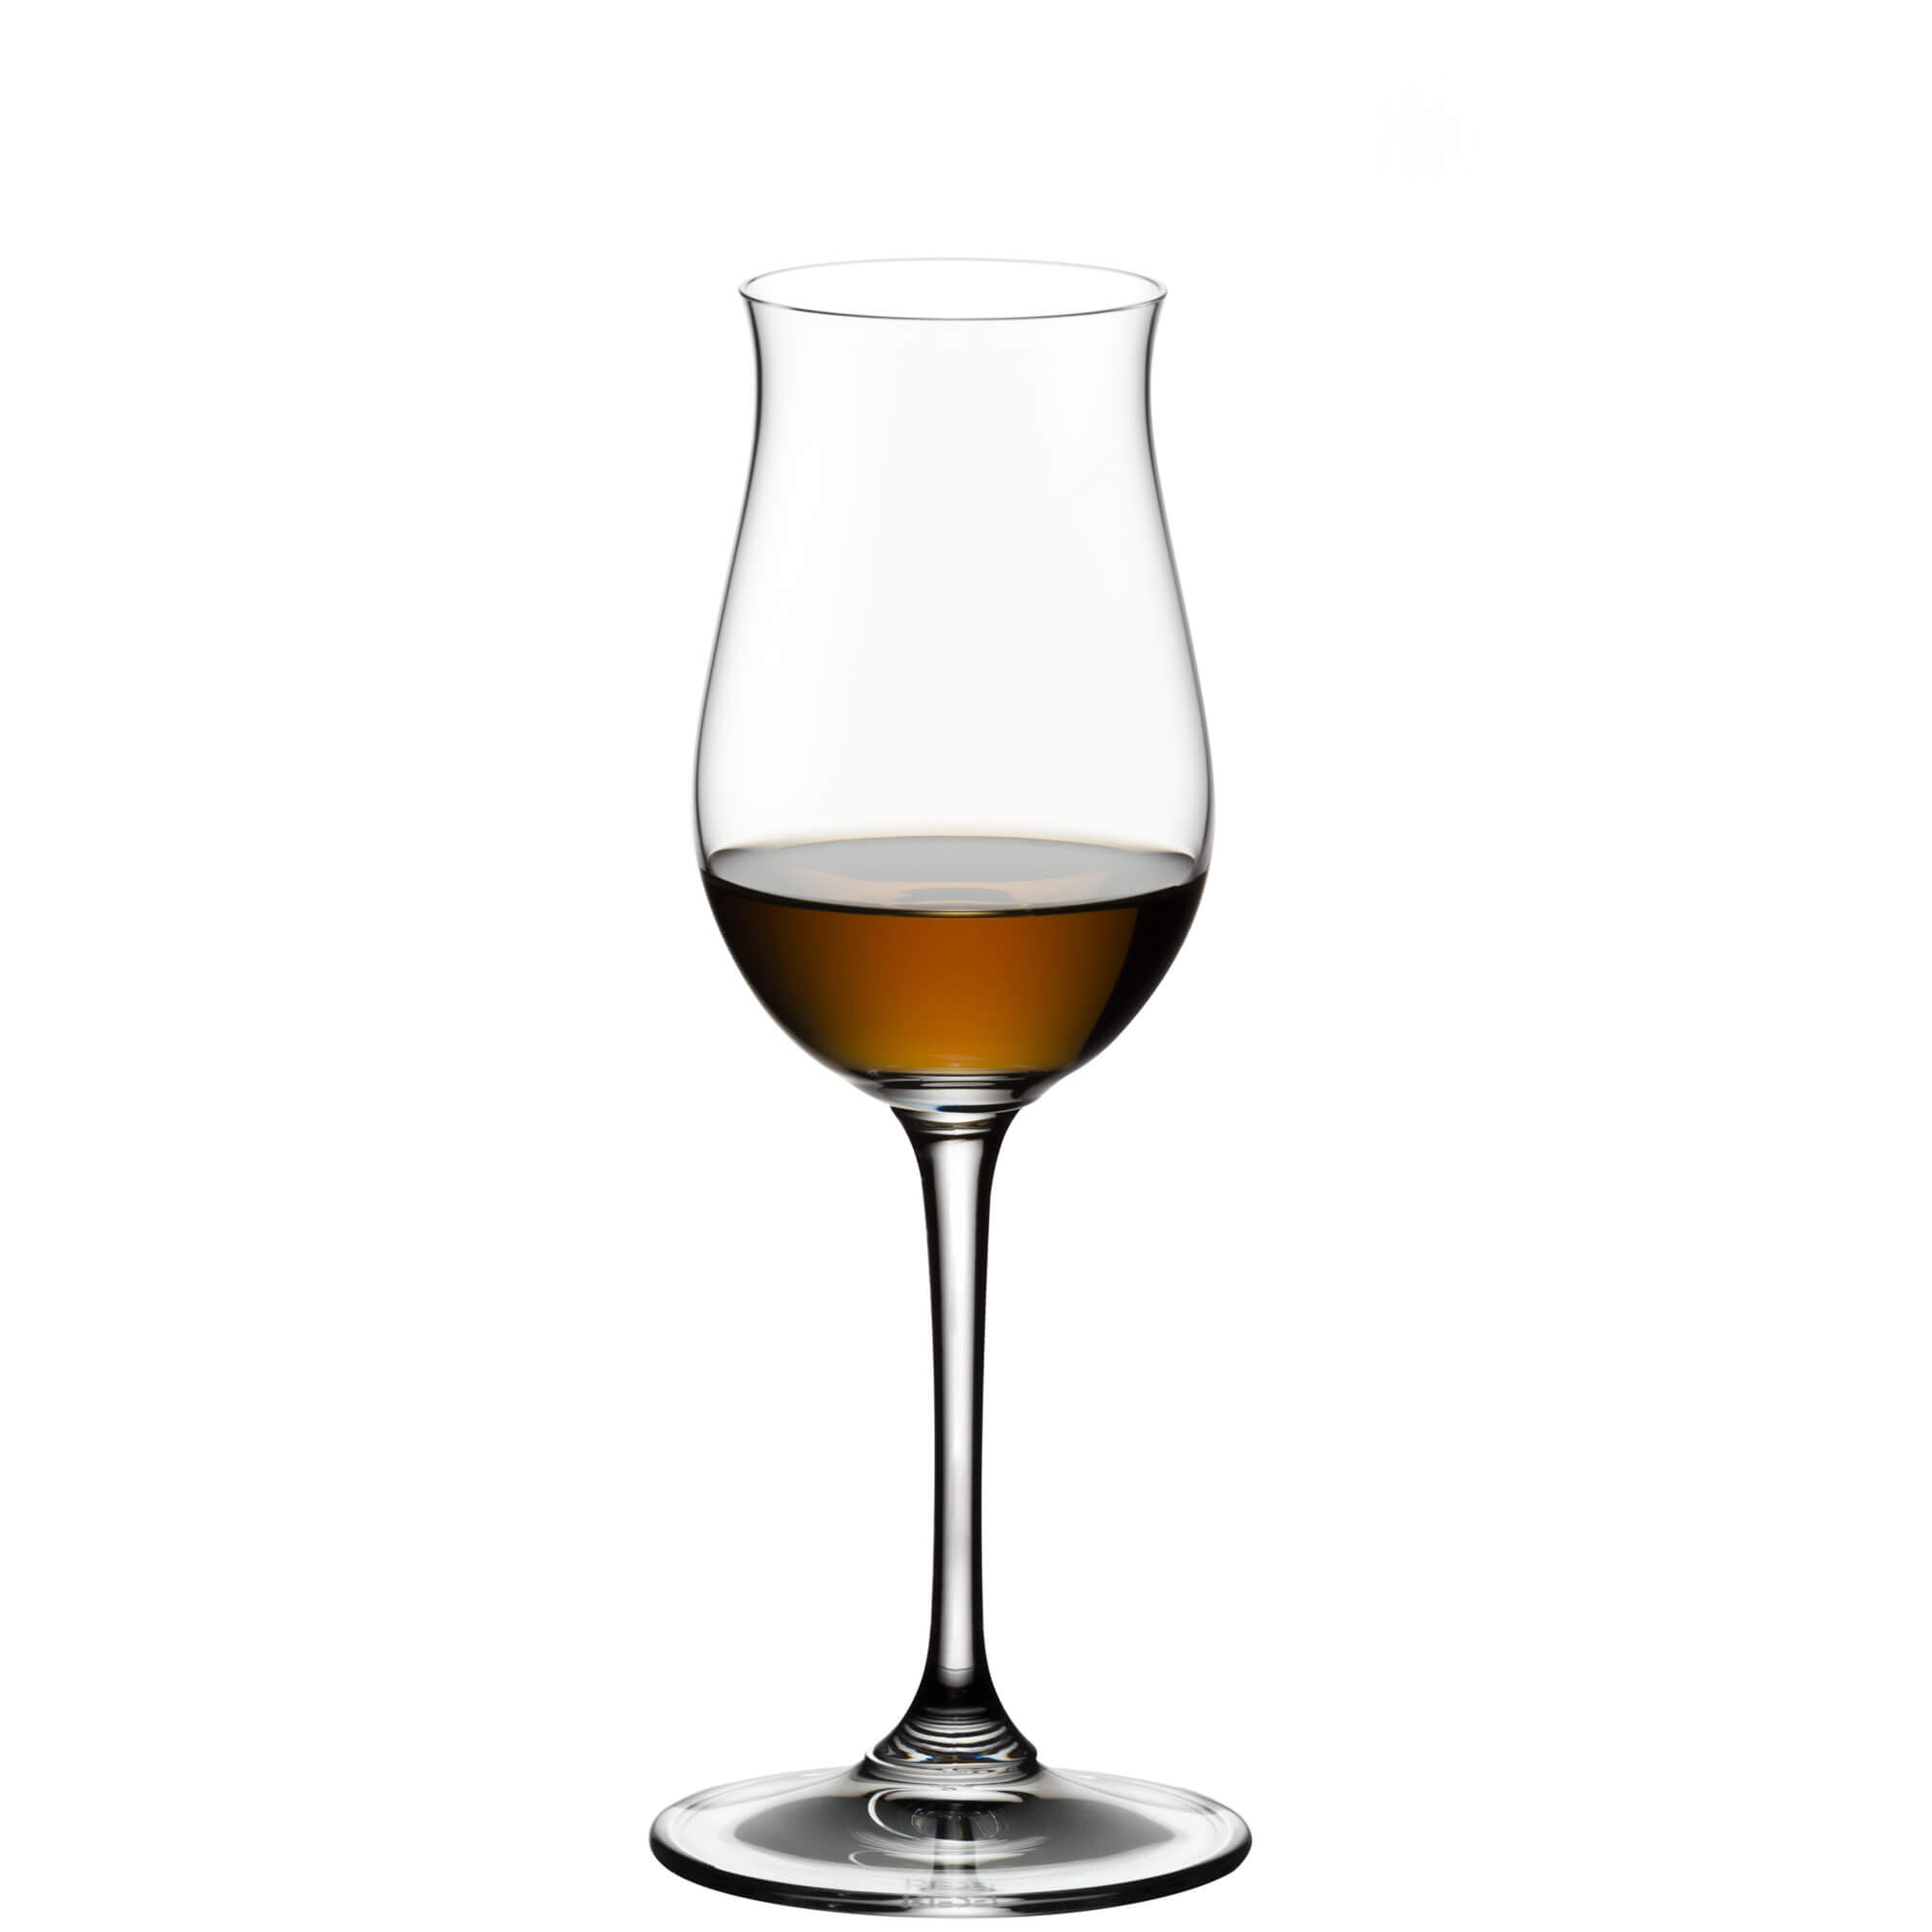 Cognac Hennessy glass Vinum, Riedel - 170ml (2 pcs.)